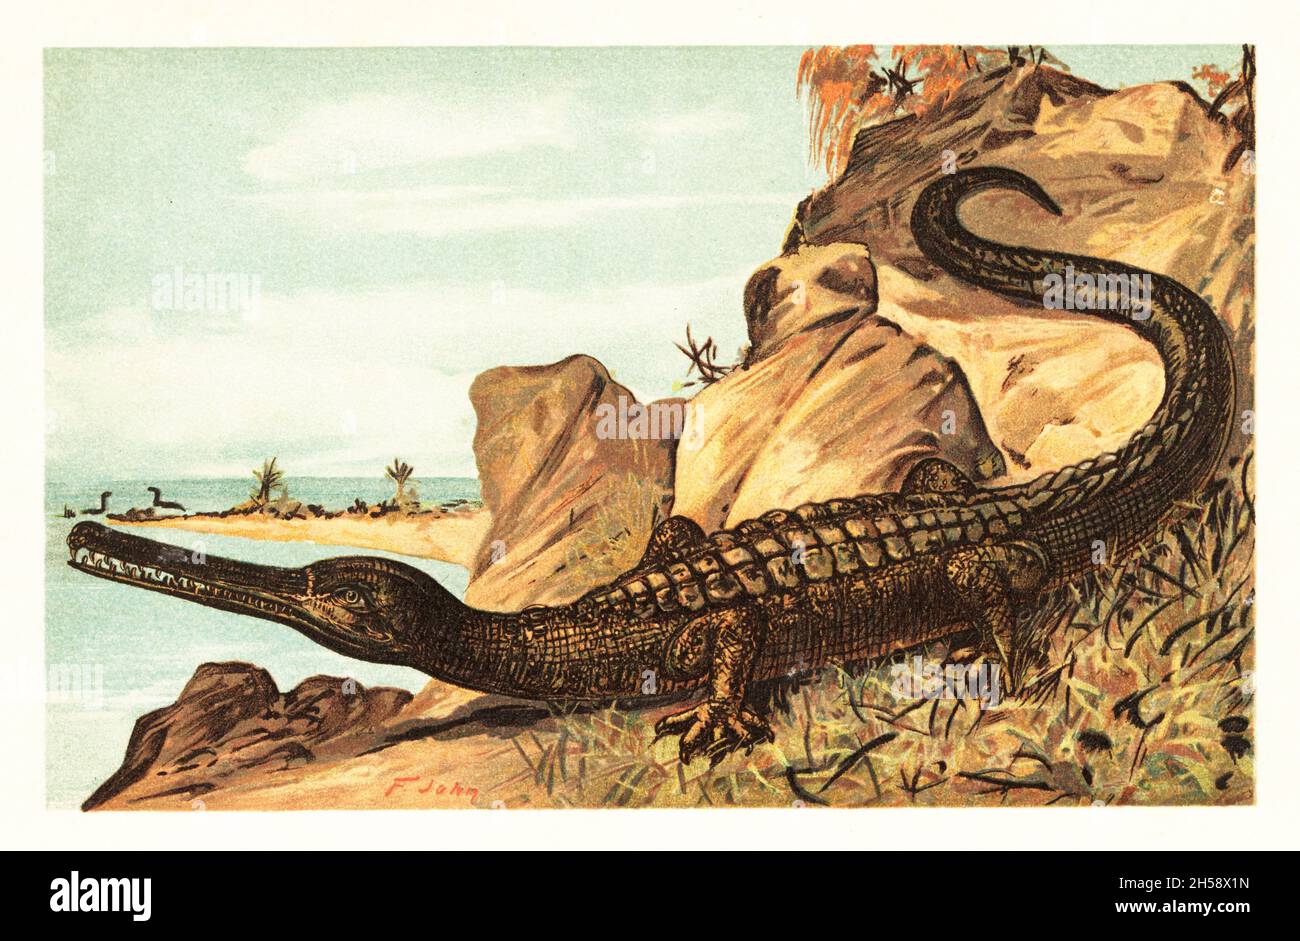 Вымерший пресмыкающиеся больших размеров. Метриоринхус древний крокодил. Древние крокодилы Саркозух. Вымершие рептилии. Древние крокодиломорфы.